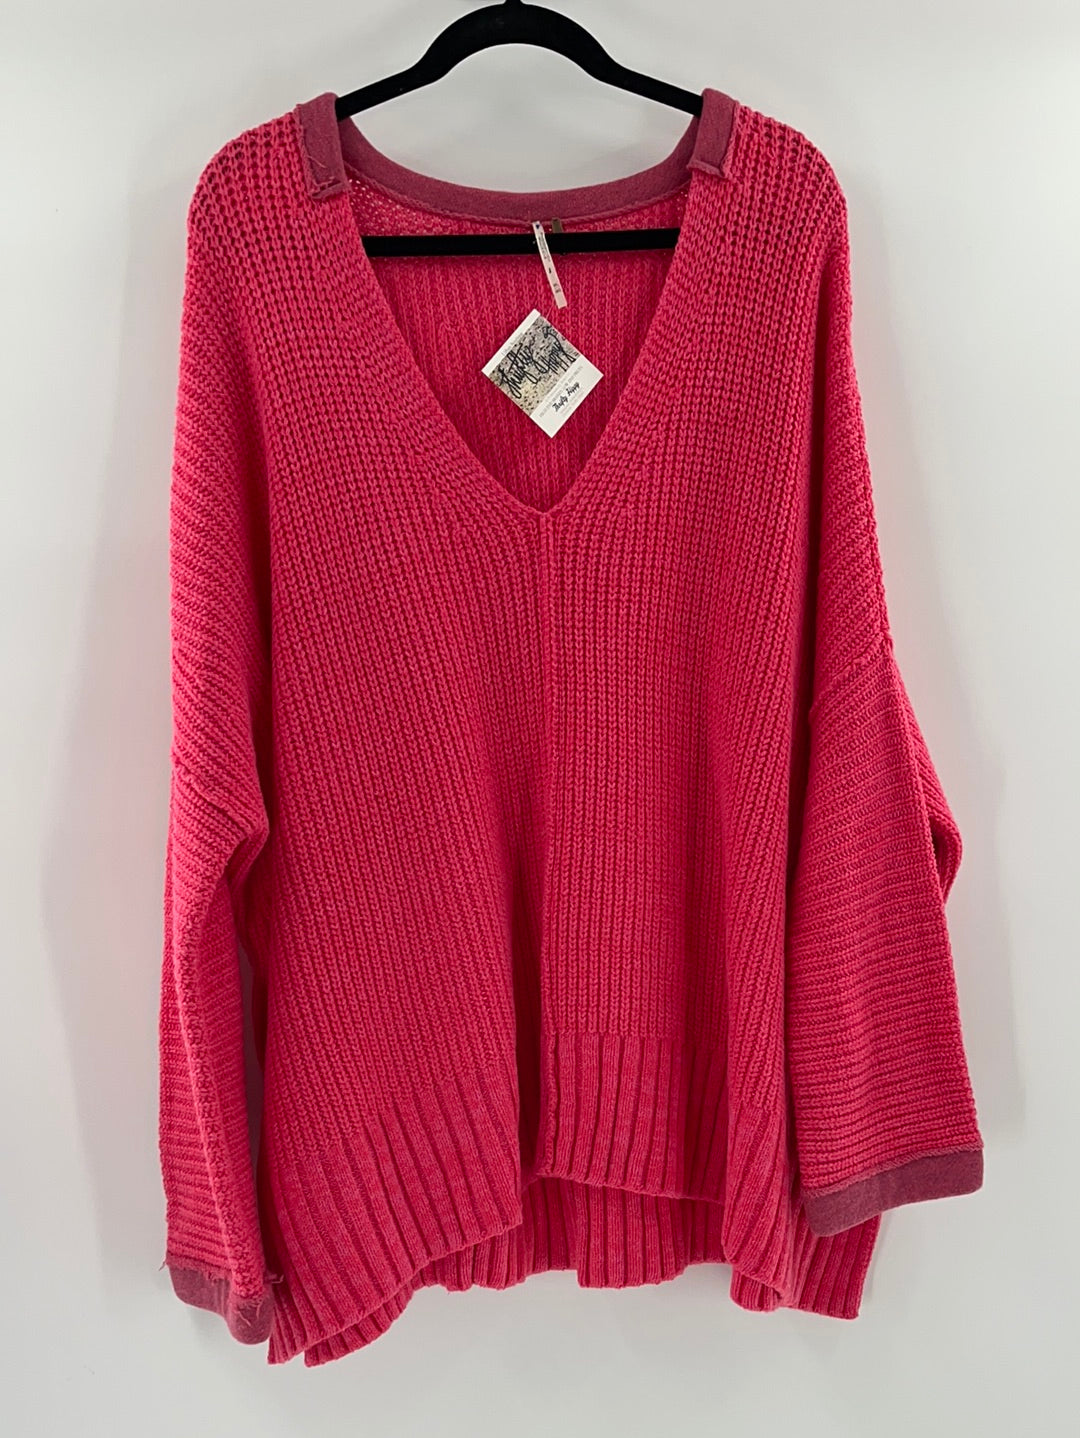 Free People Bright Pink Oversized Sweater V Neck ( Size Medium/Large)